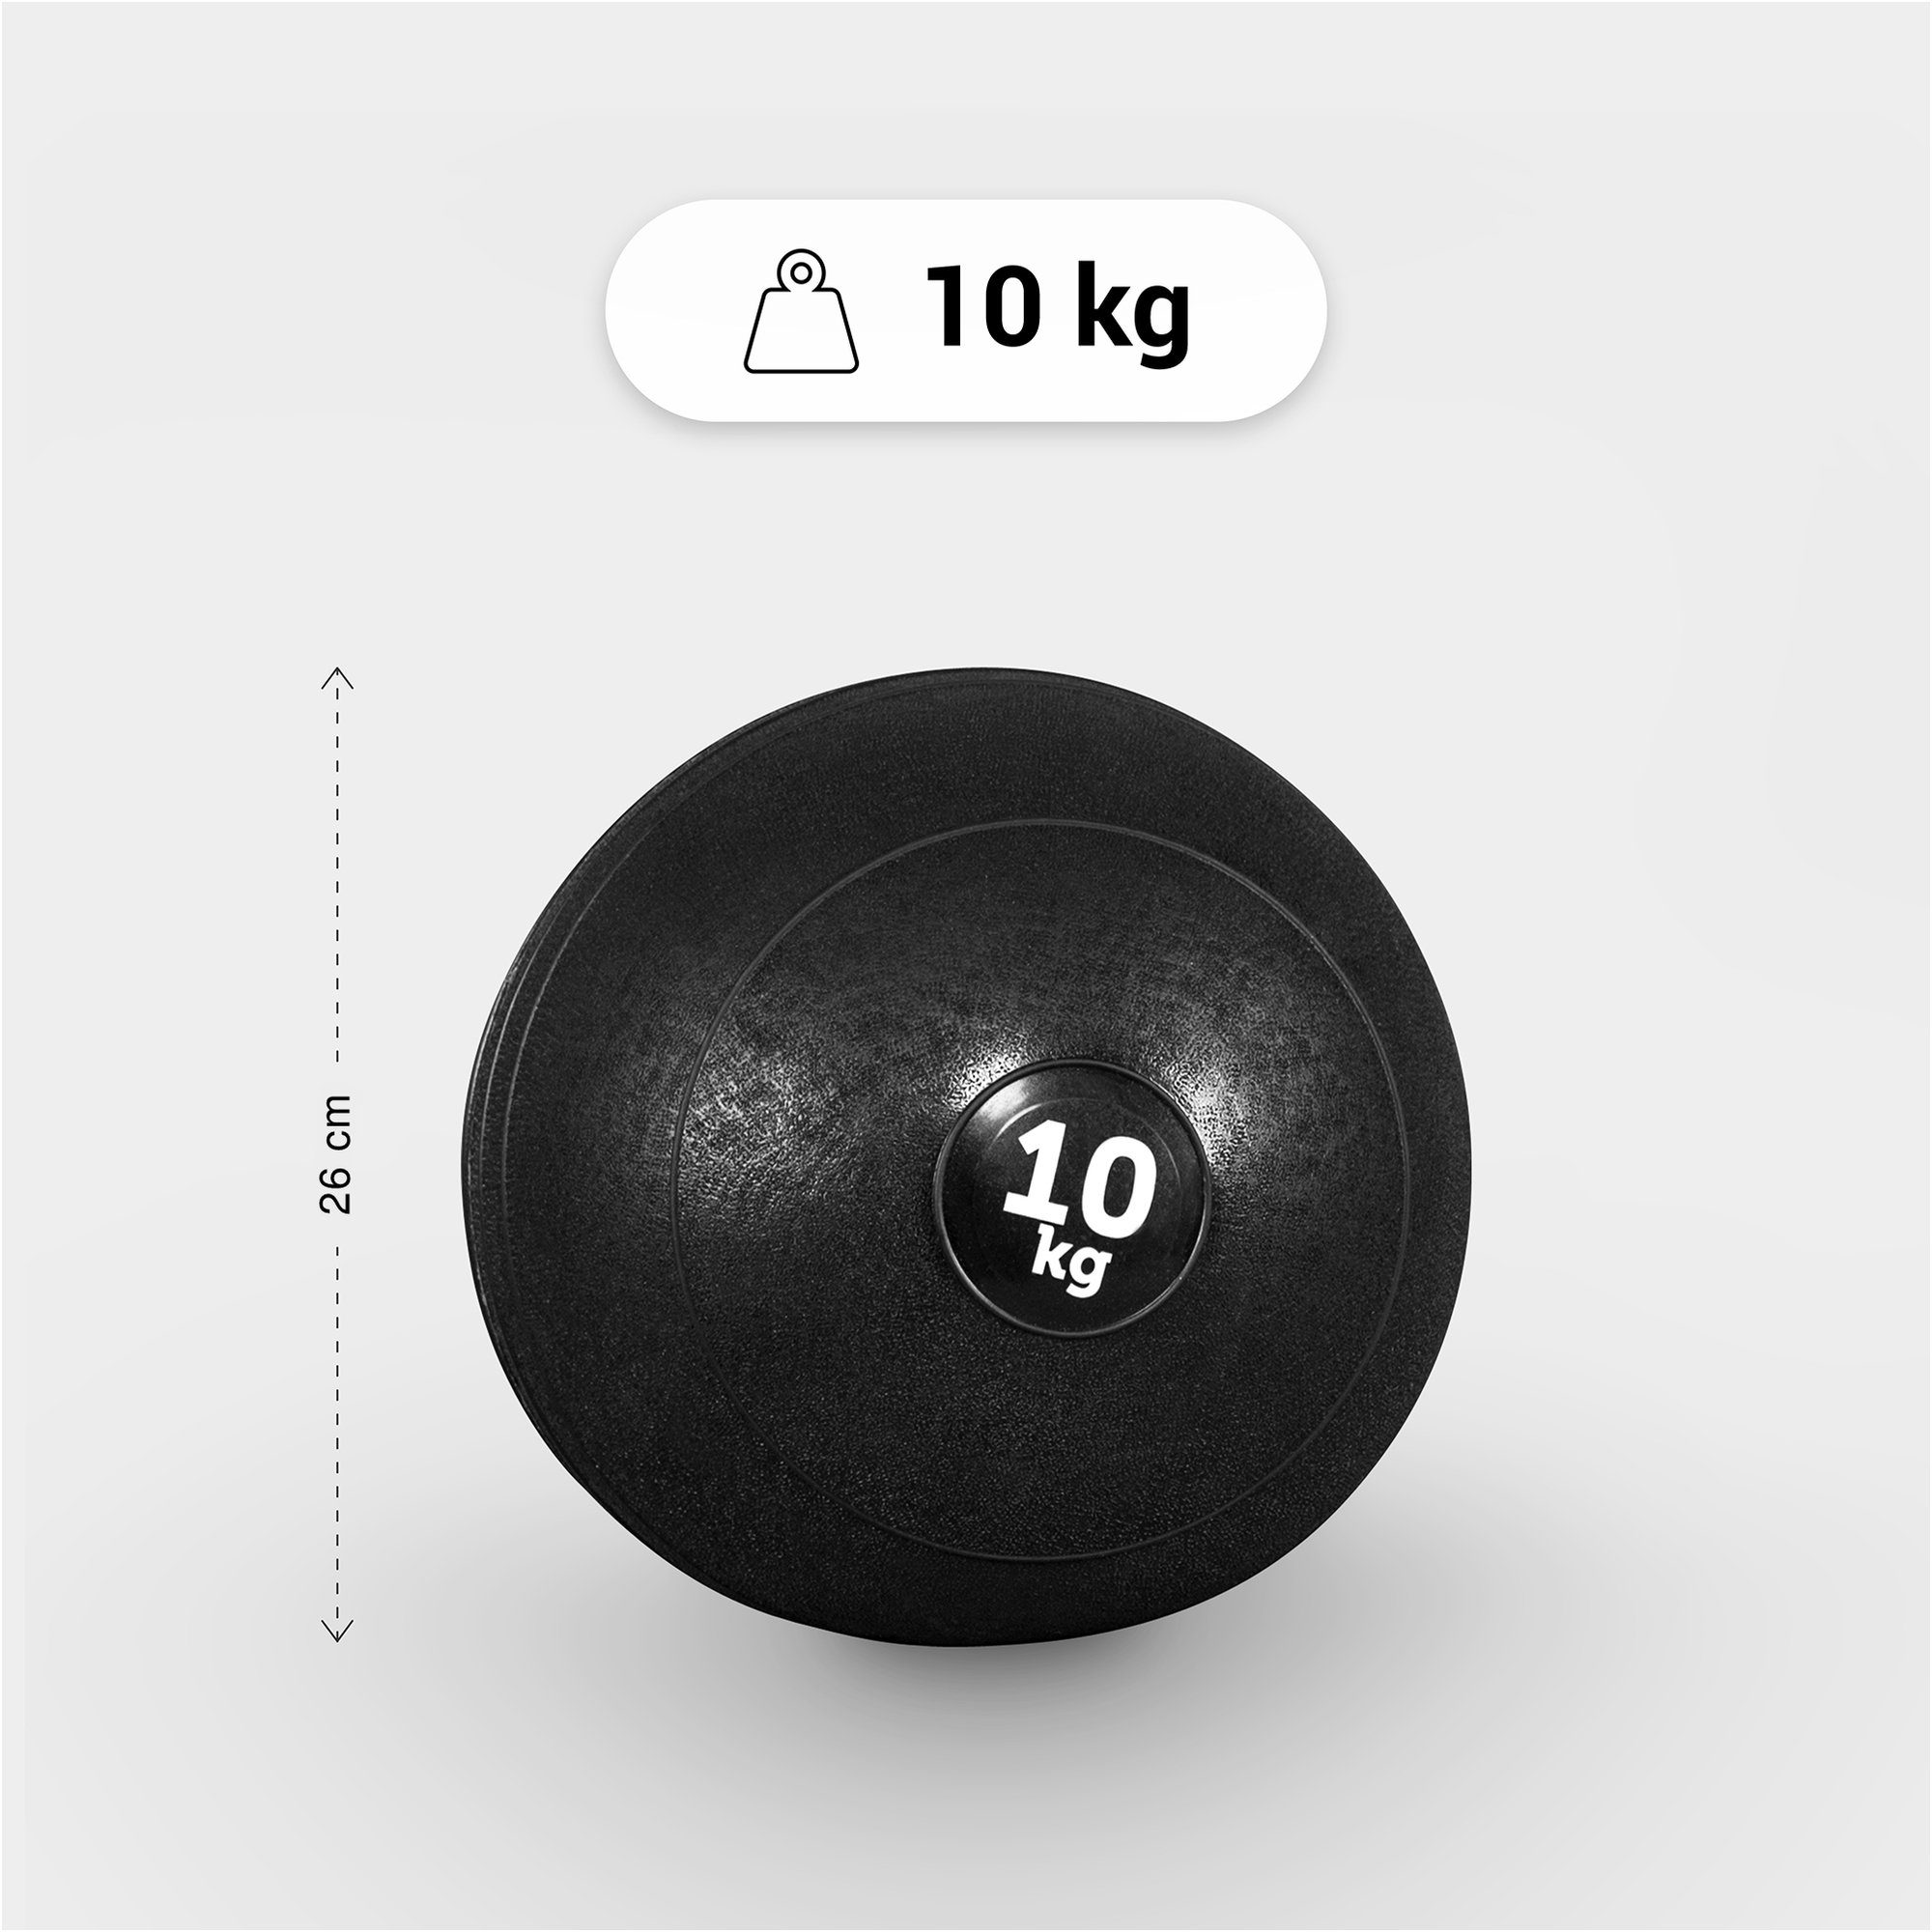 Oberfläche 25kg 20kg, 15kg, Griffiger 10kg, Medizinball Einzeln/Set, GORILLA 5kg, mit SPORTS 7kg, 3kg, Set